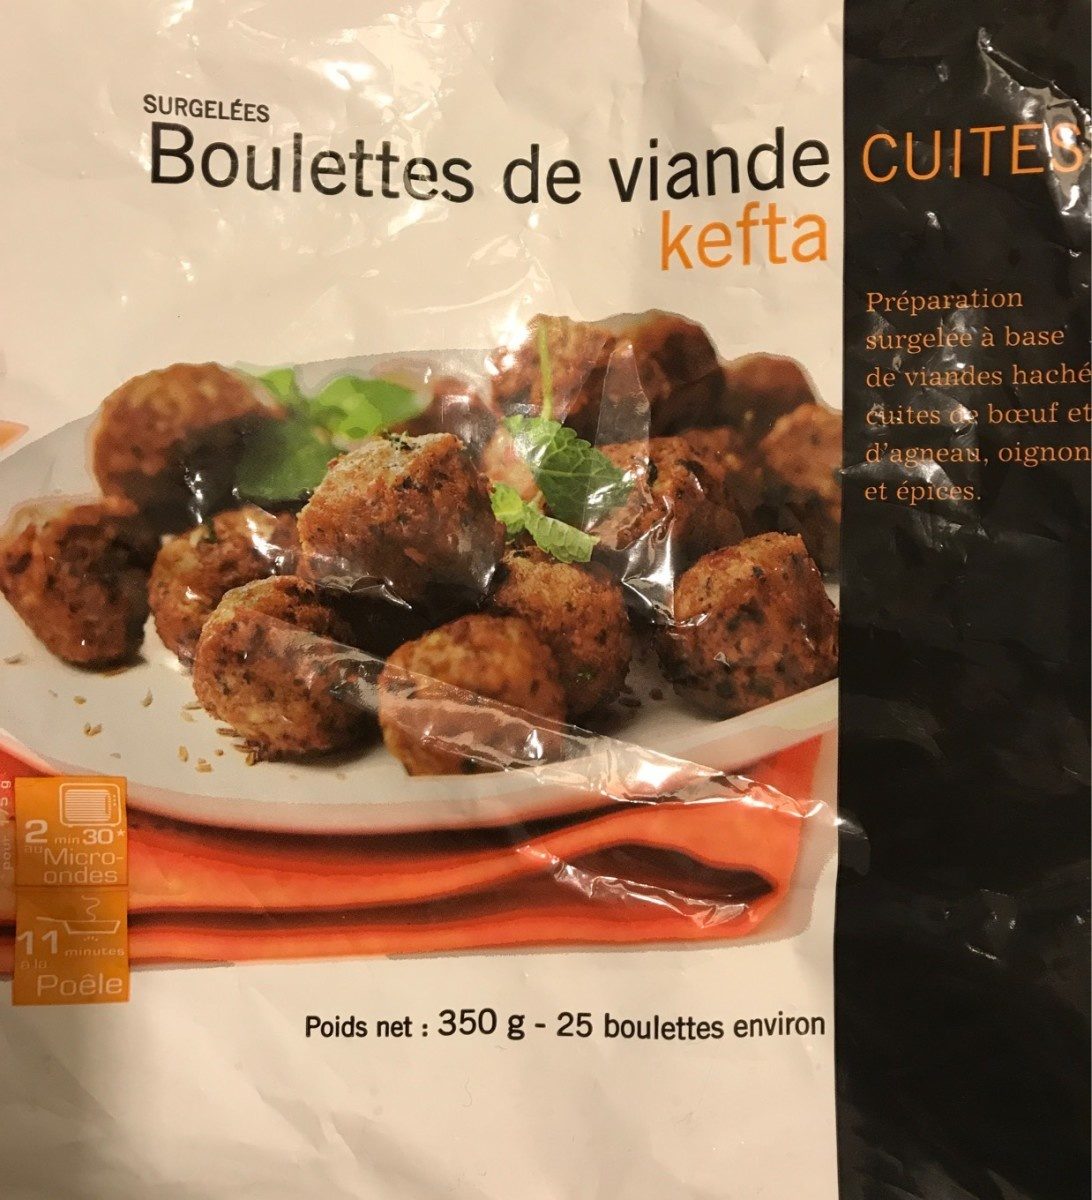 Boulettes de viande cuites kefta - Product - fr